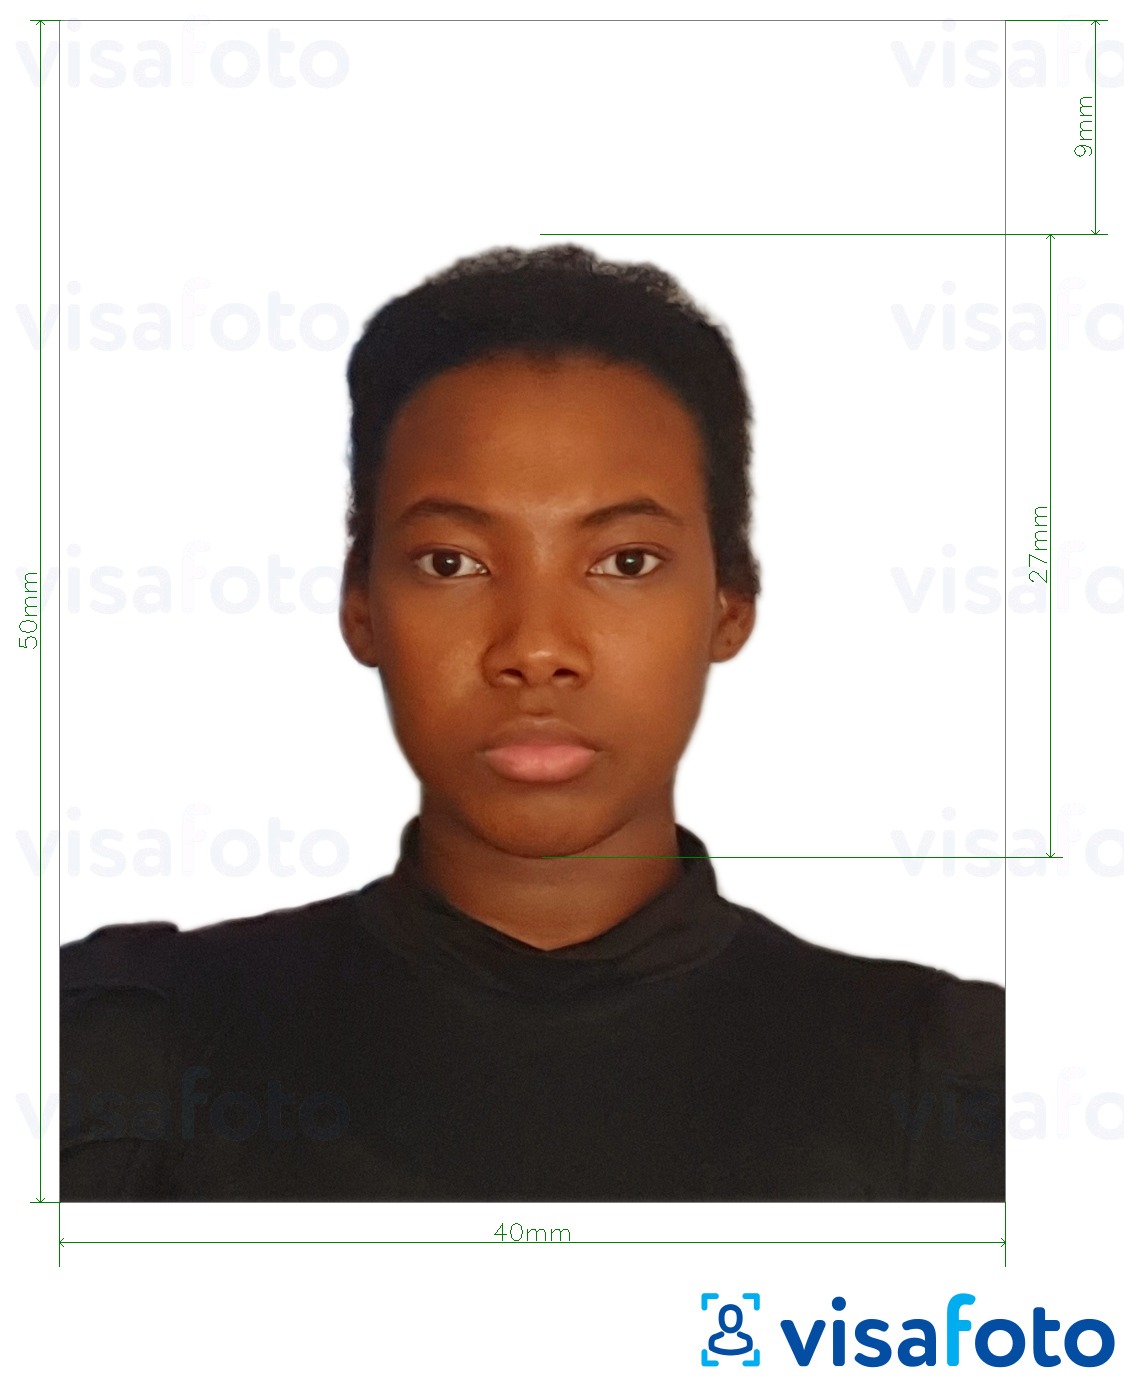 Primjer fotografije za Kolumbijska osobna iskaznica 4x5 cm s točno određenom veličinom